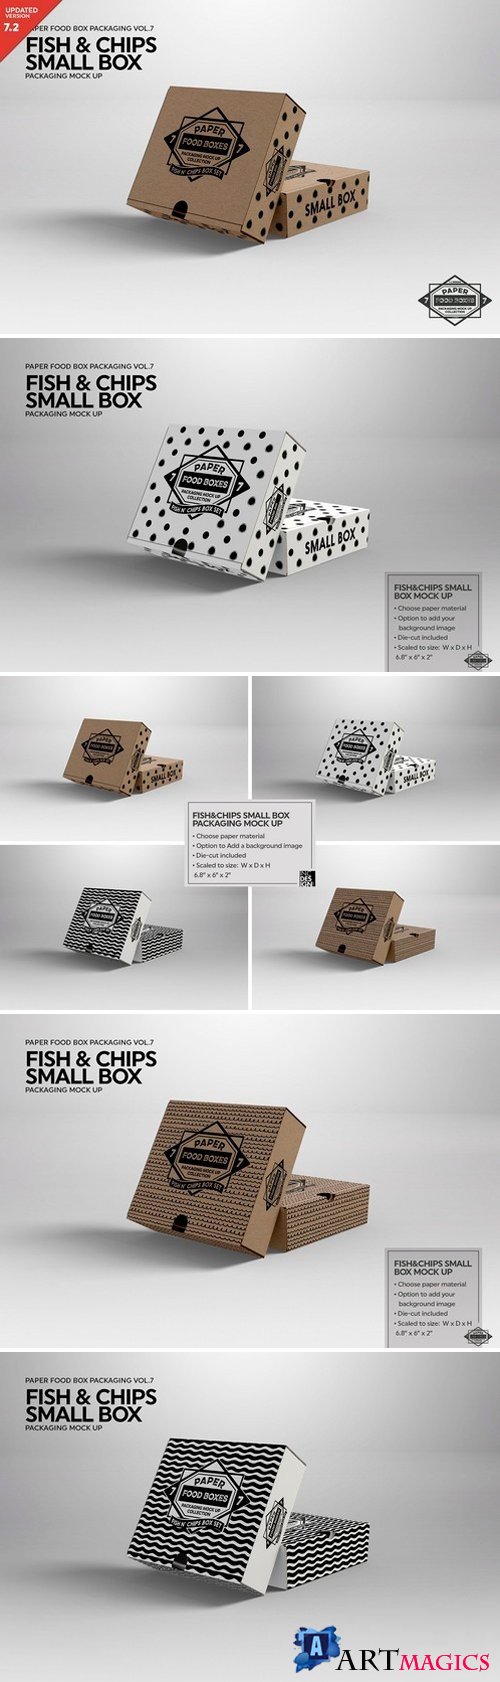 Small Fish and Chips Box Mockup 2487960